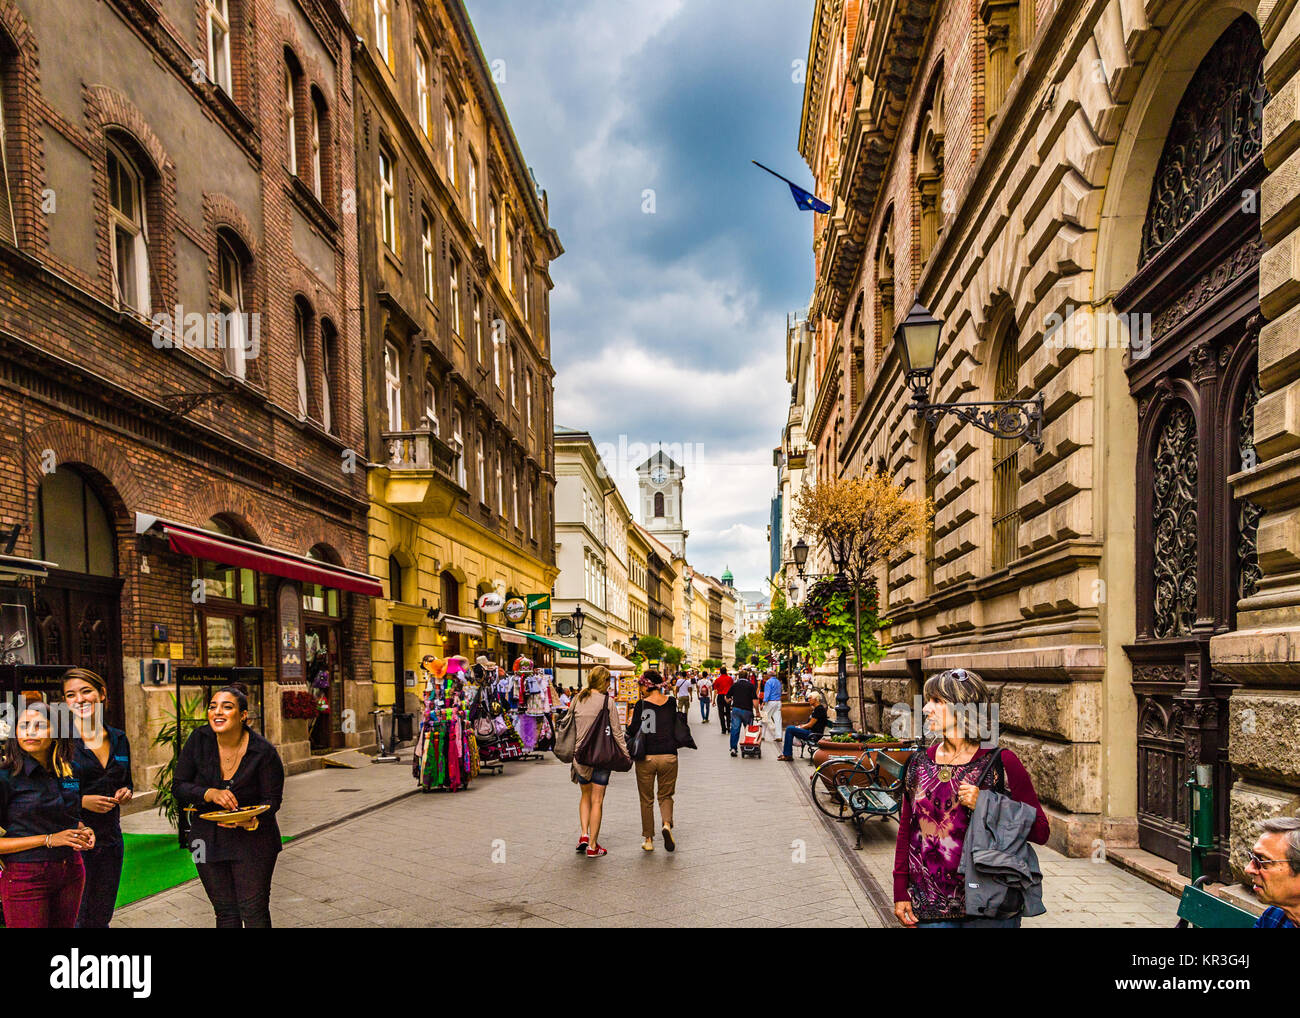 BUDAPEST, Ungarn - 16. SEPTEMBER 2014: Touristen, Einkaufen in der Vaci Utca und anderen beliebten Straßen des historischen Zentrums. Jedes Jahr wird die Anzahl der Stockfoto